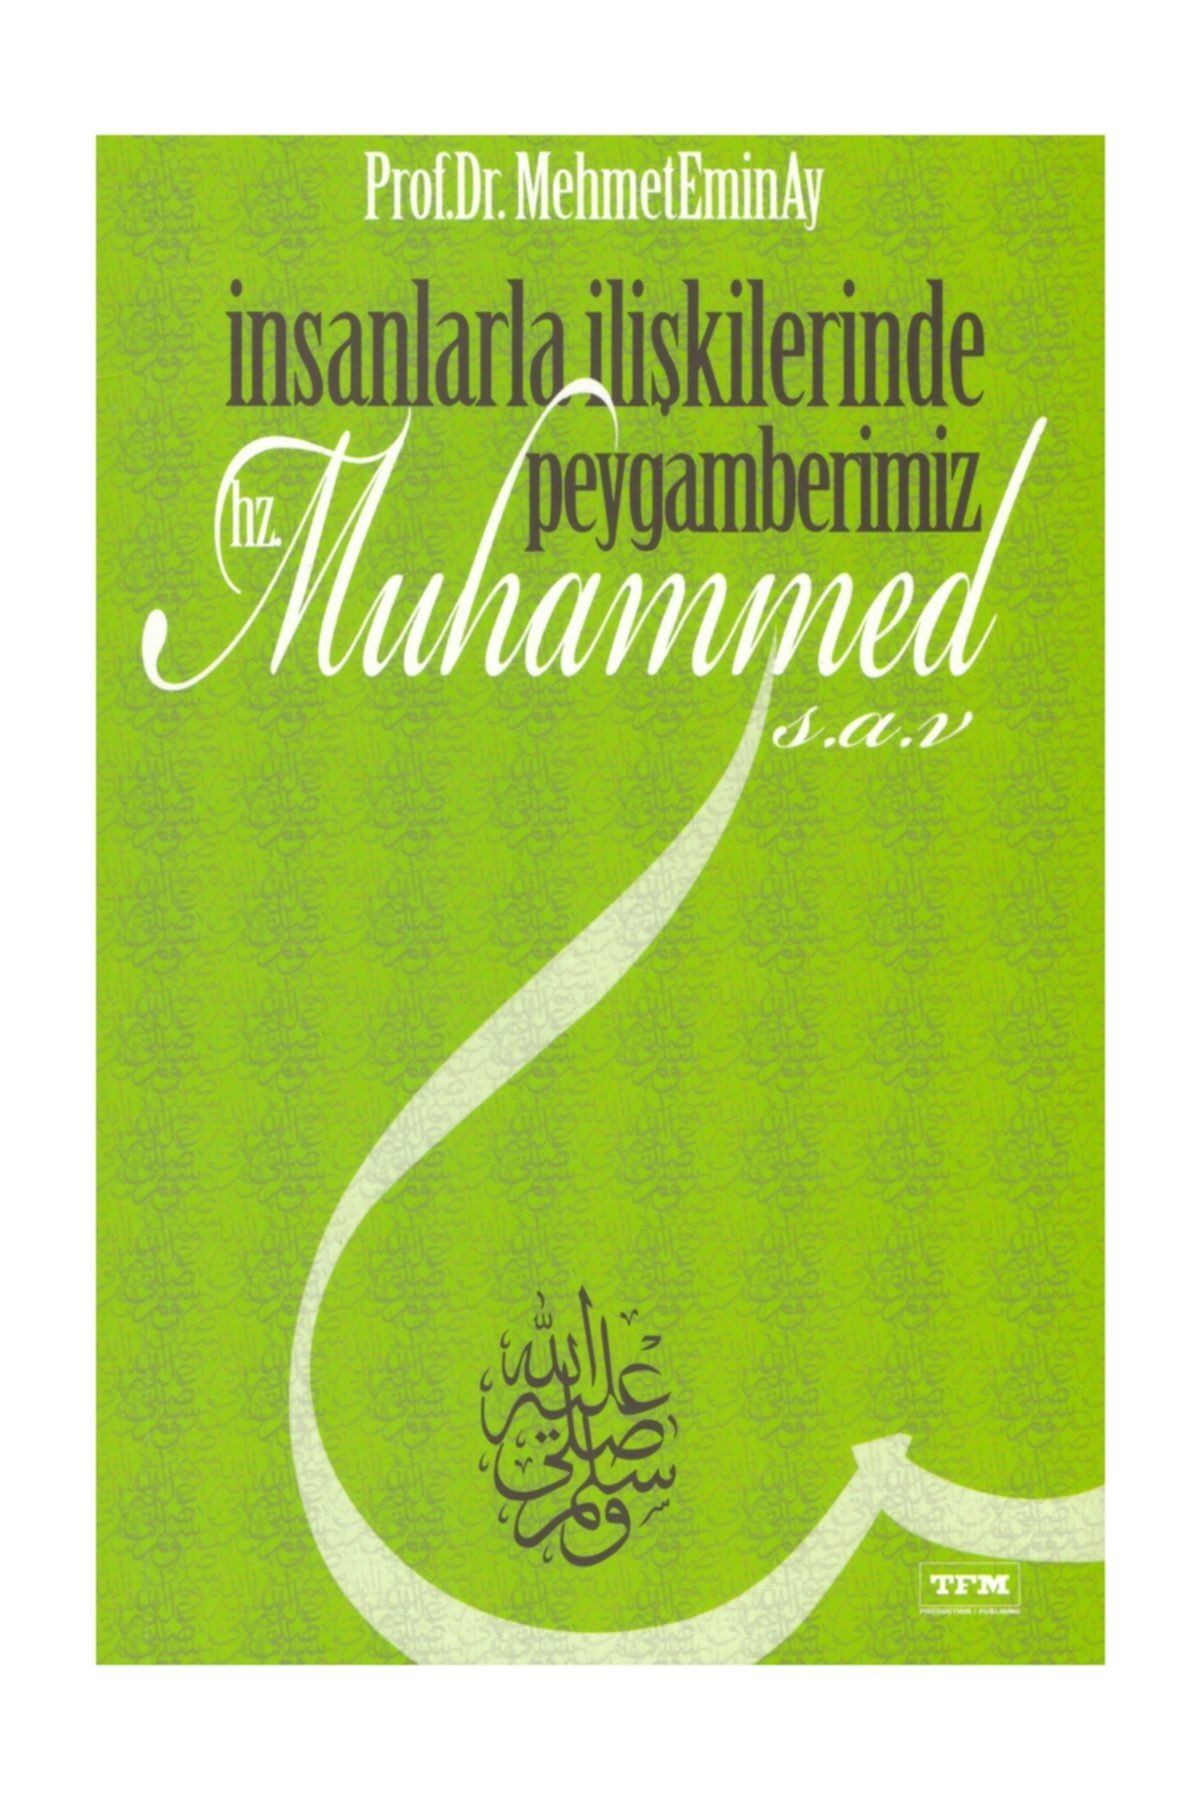 TFM Insanlarla Ilişkilerinde Peygamberimiz Hz.muhammed S.a.v